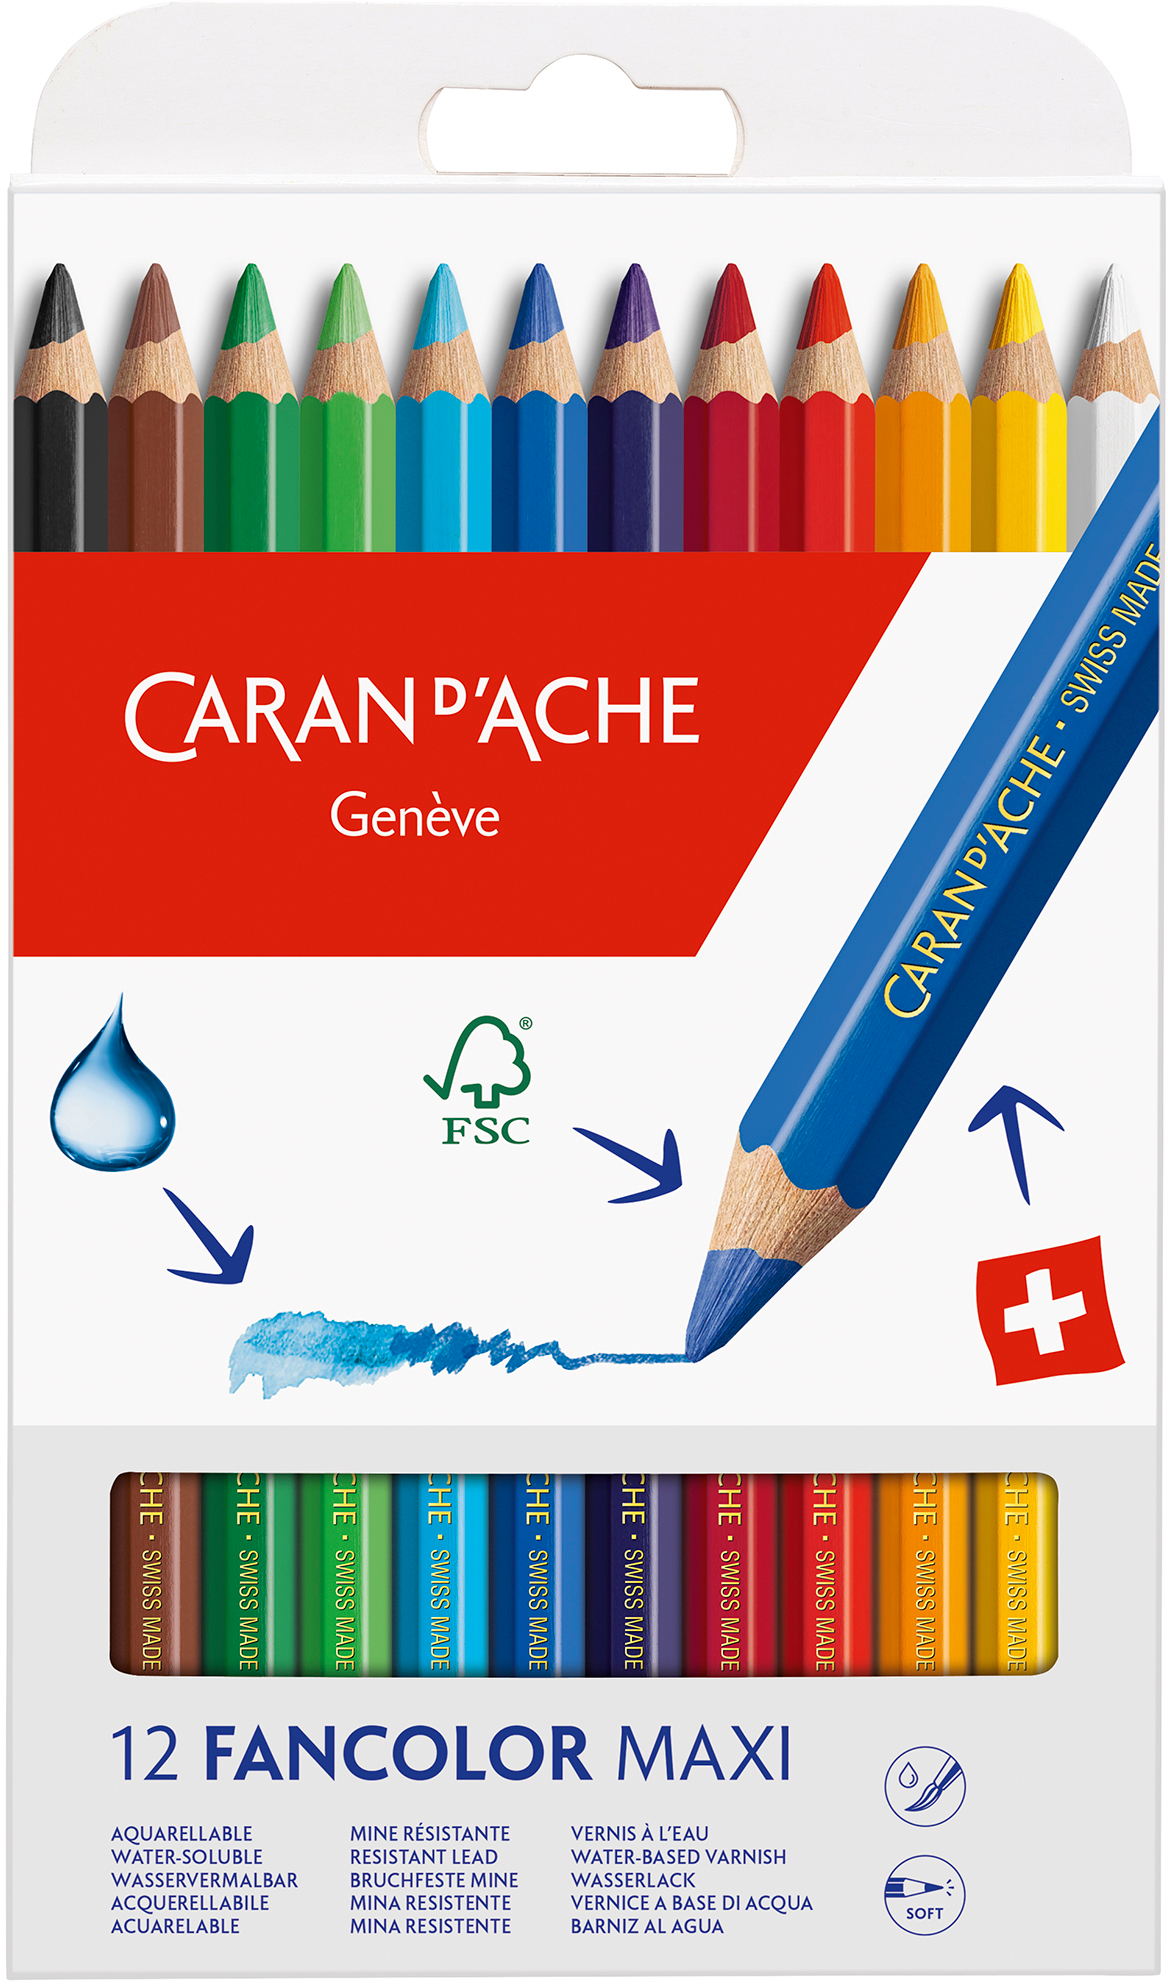 CARAN D'ACHE Farbstifte Maxi Fancolor 498.712 12 couleurs carton 12 couleurs carton